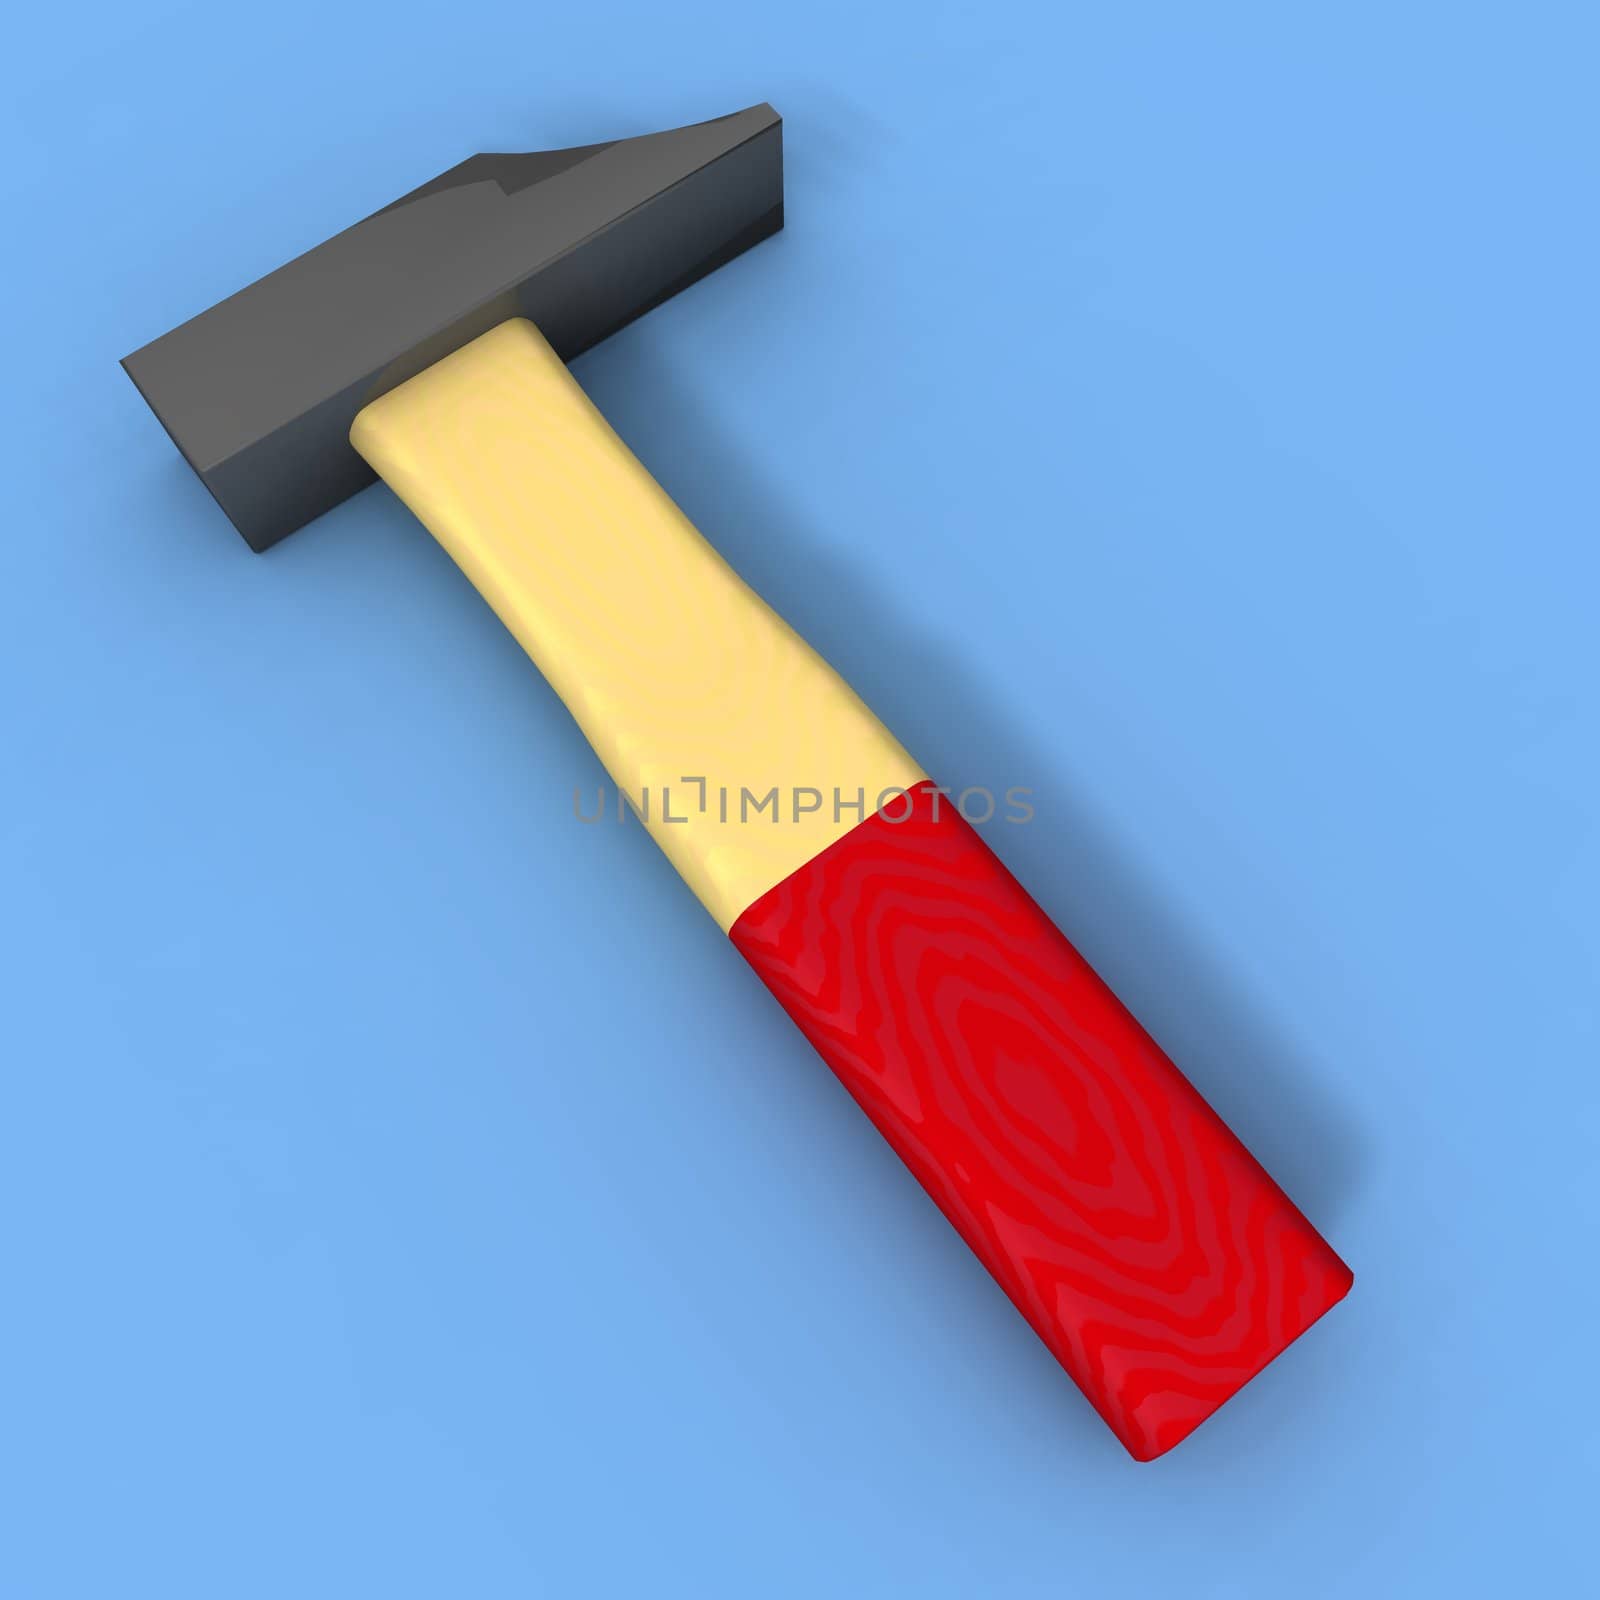 Hammer by jbouzou